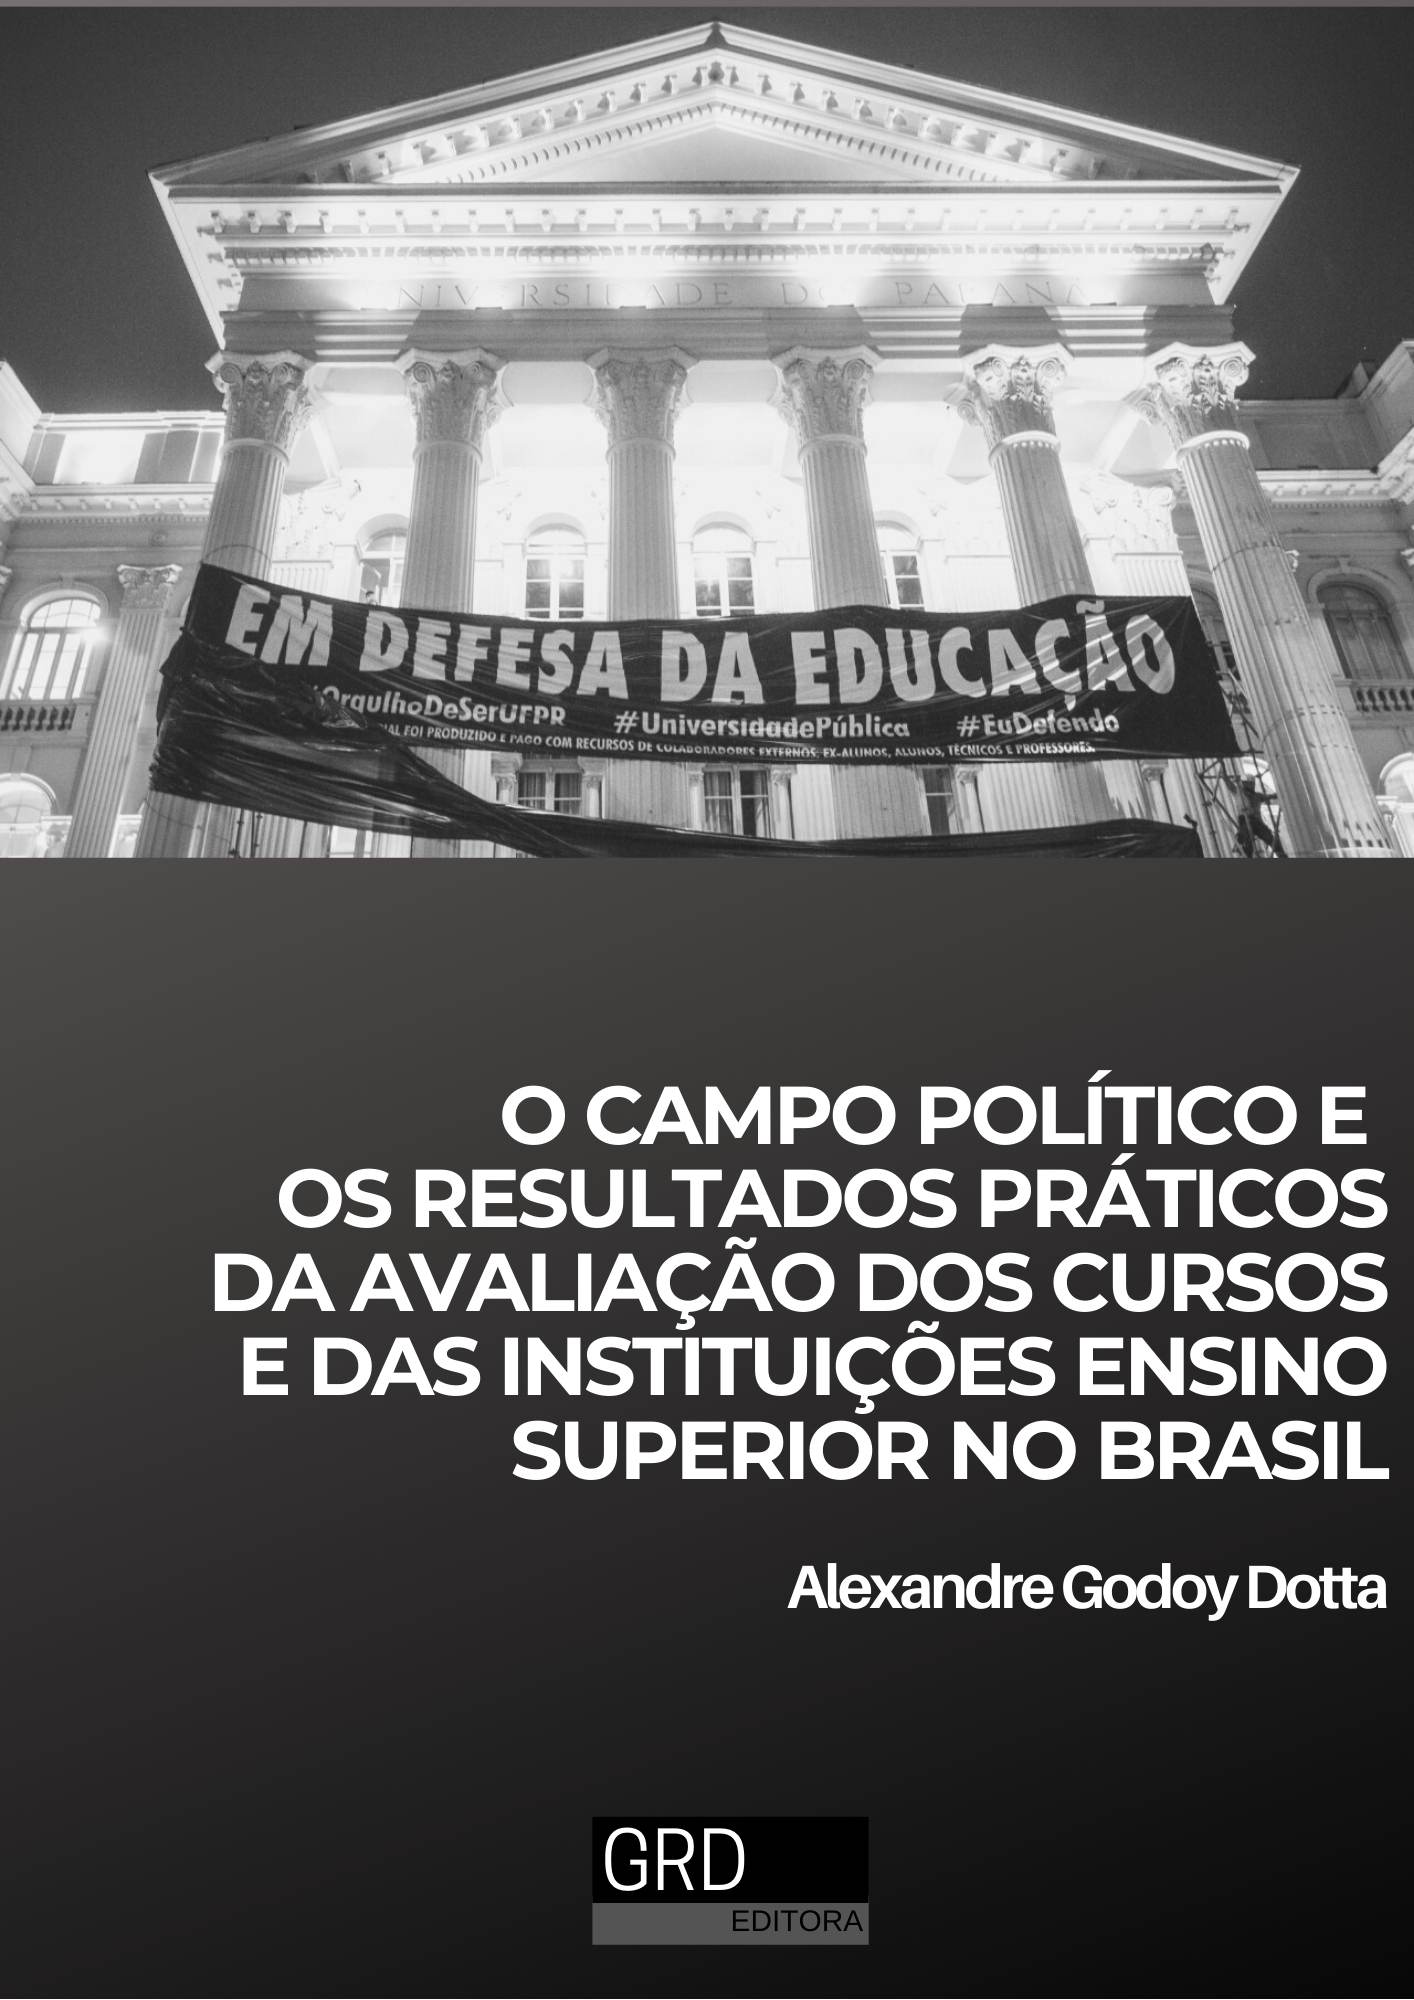 					Visualizar 2020: O campo político e os resultados práticos da avaliação dos cursos e das instituições ensino superior no Brasil
				